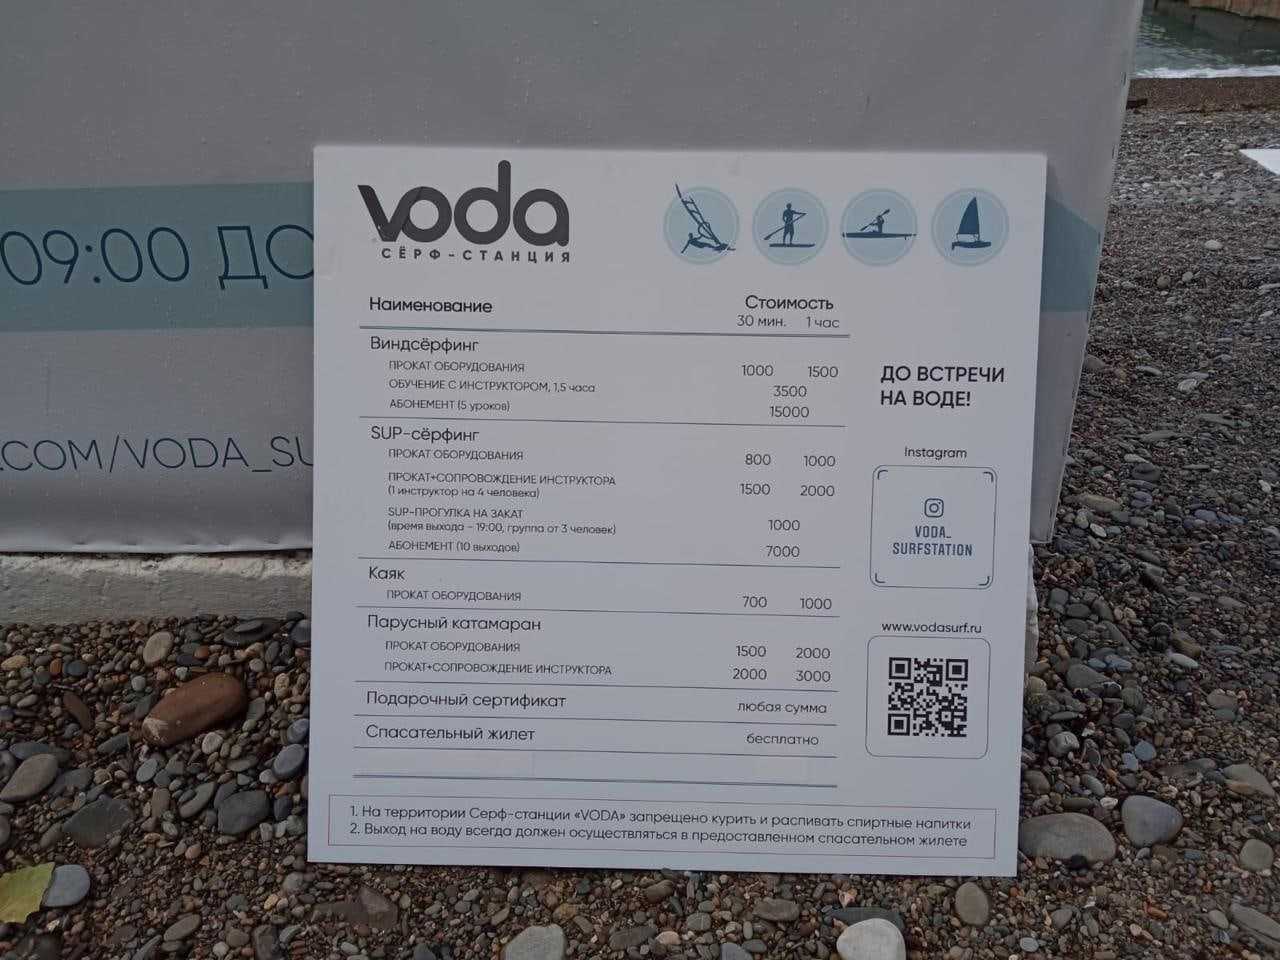 Сёрф-станция VODA, являющийся арендатором пляжной территории, о которой упоминается в видеоролике, размещенном в сети…